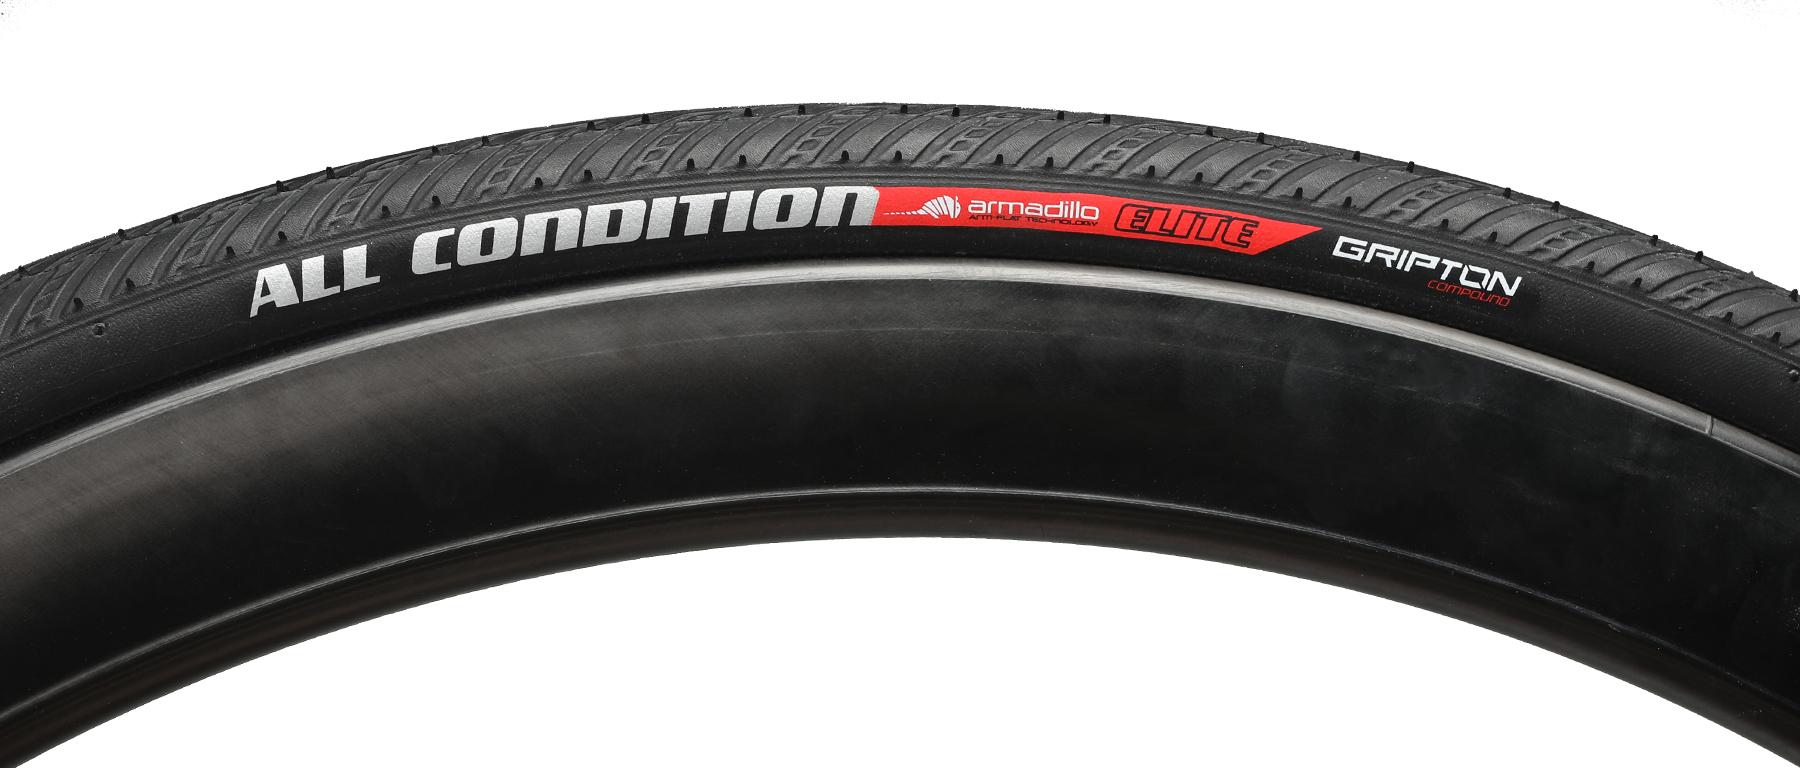 Specialized All Condition Armadillo Elite Tire